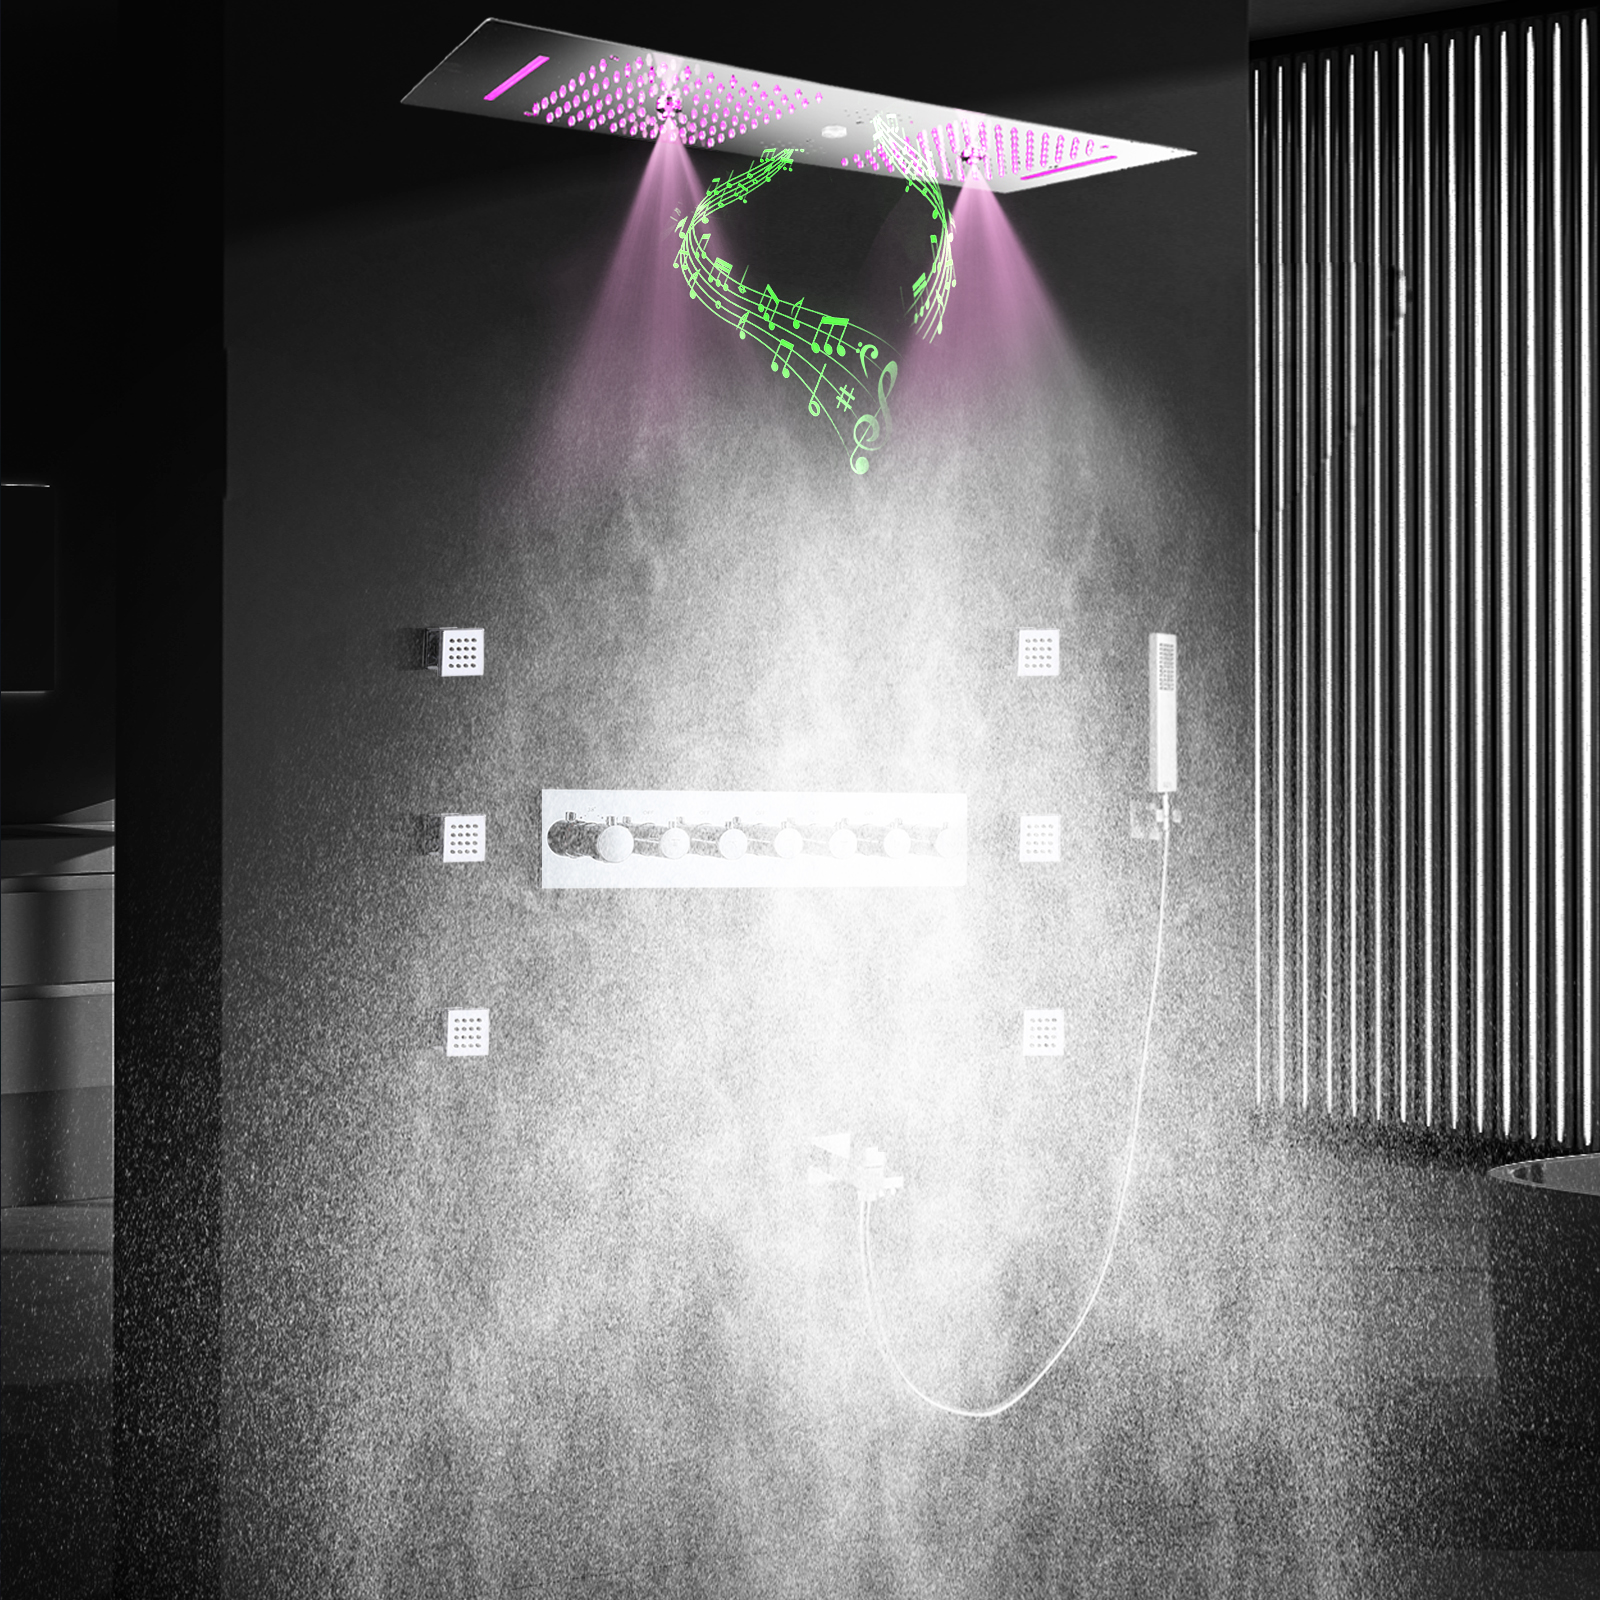 Cabeça de chuveiro espelhada cromada, 900*300 led, com alto-falante musical, chuveiro duplo, teto embutido, banheiro, conjunto de torneira termostática